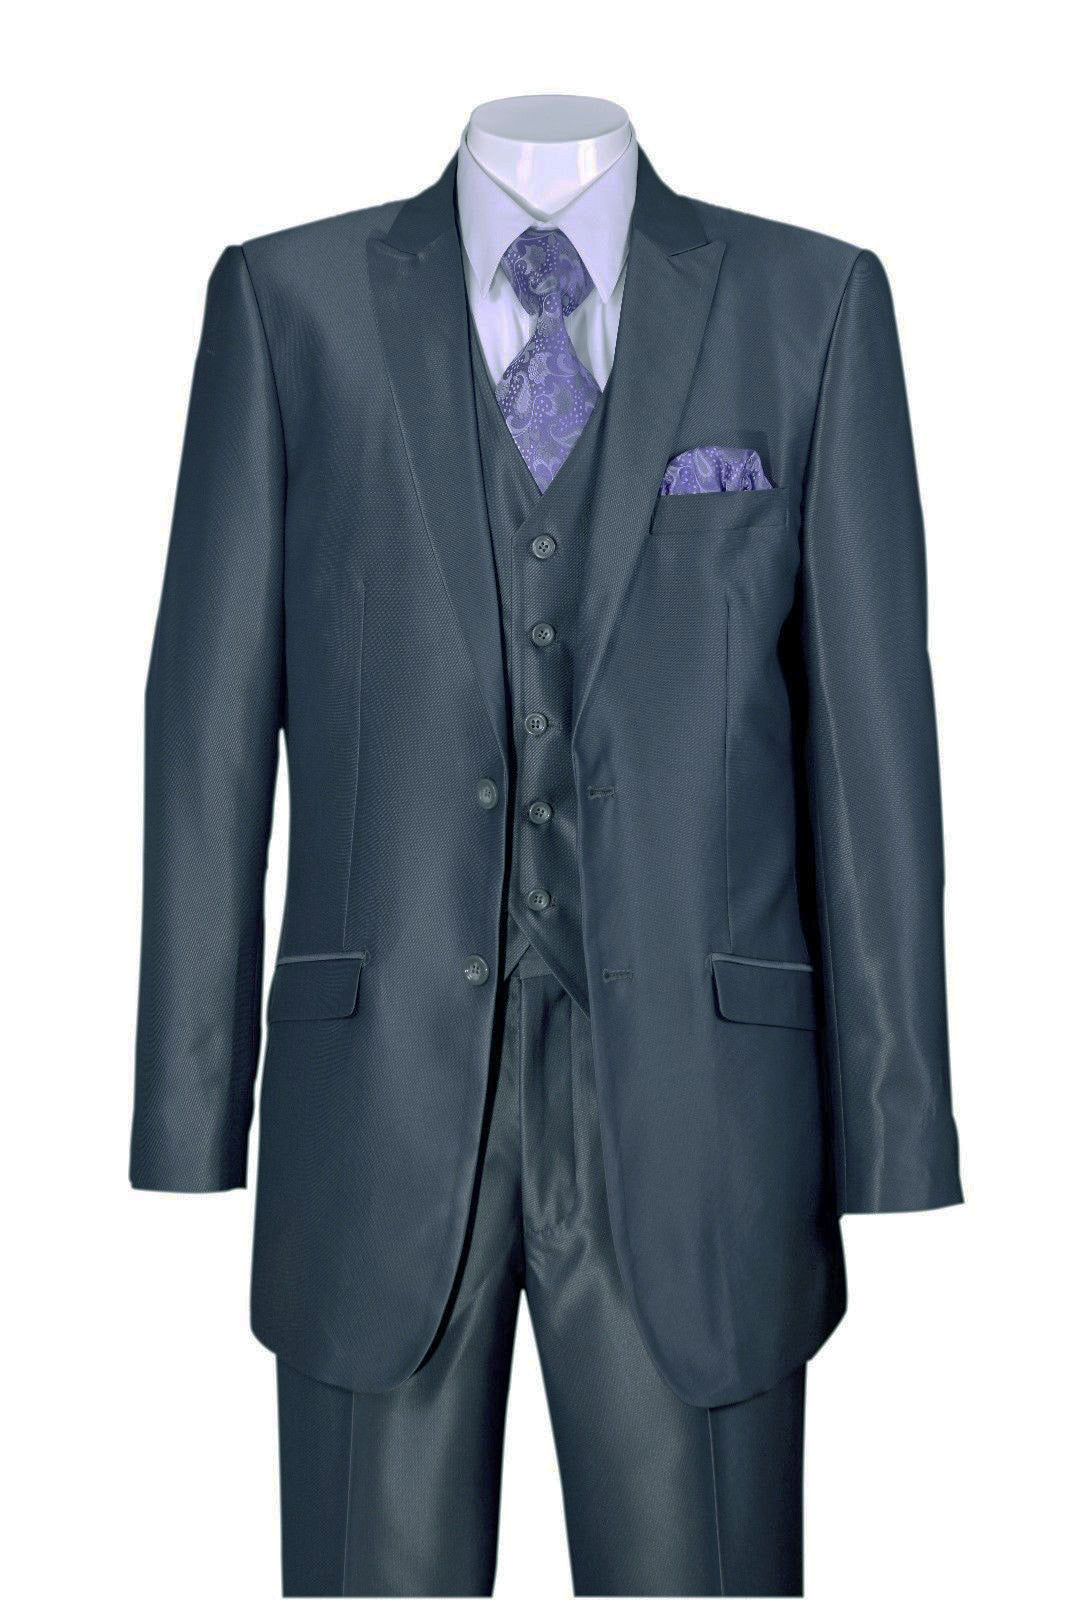 Fortino Landi Men Suit 5702V2C-Grey